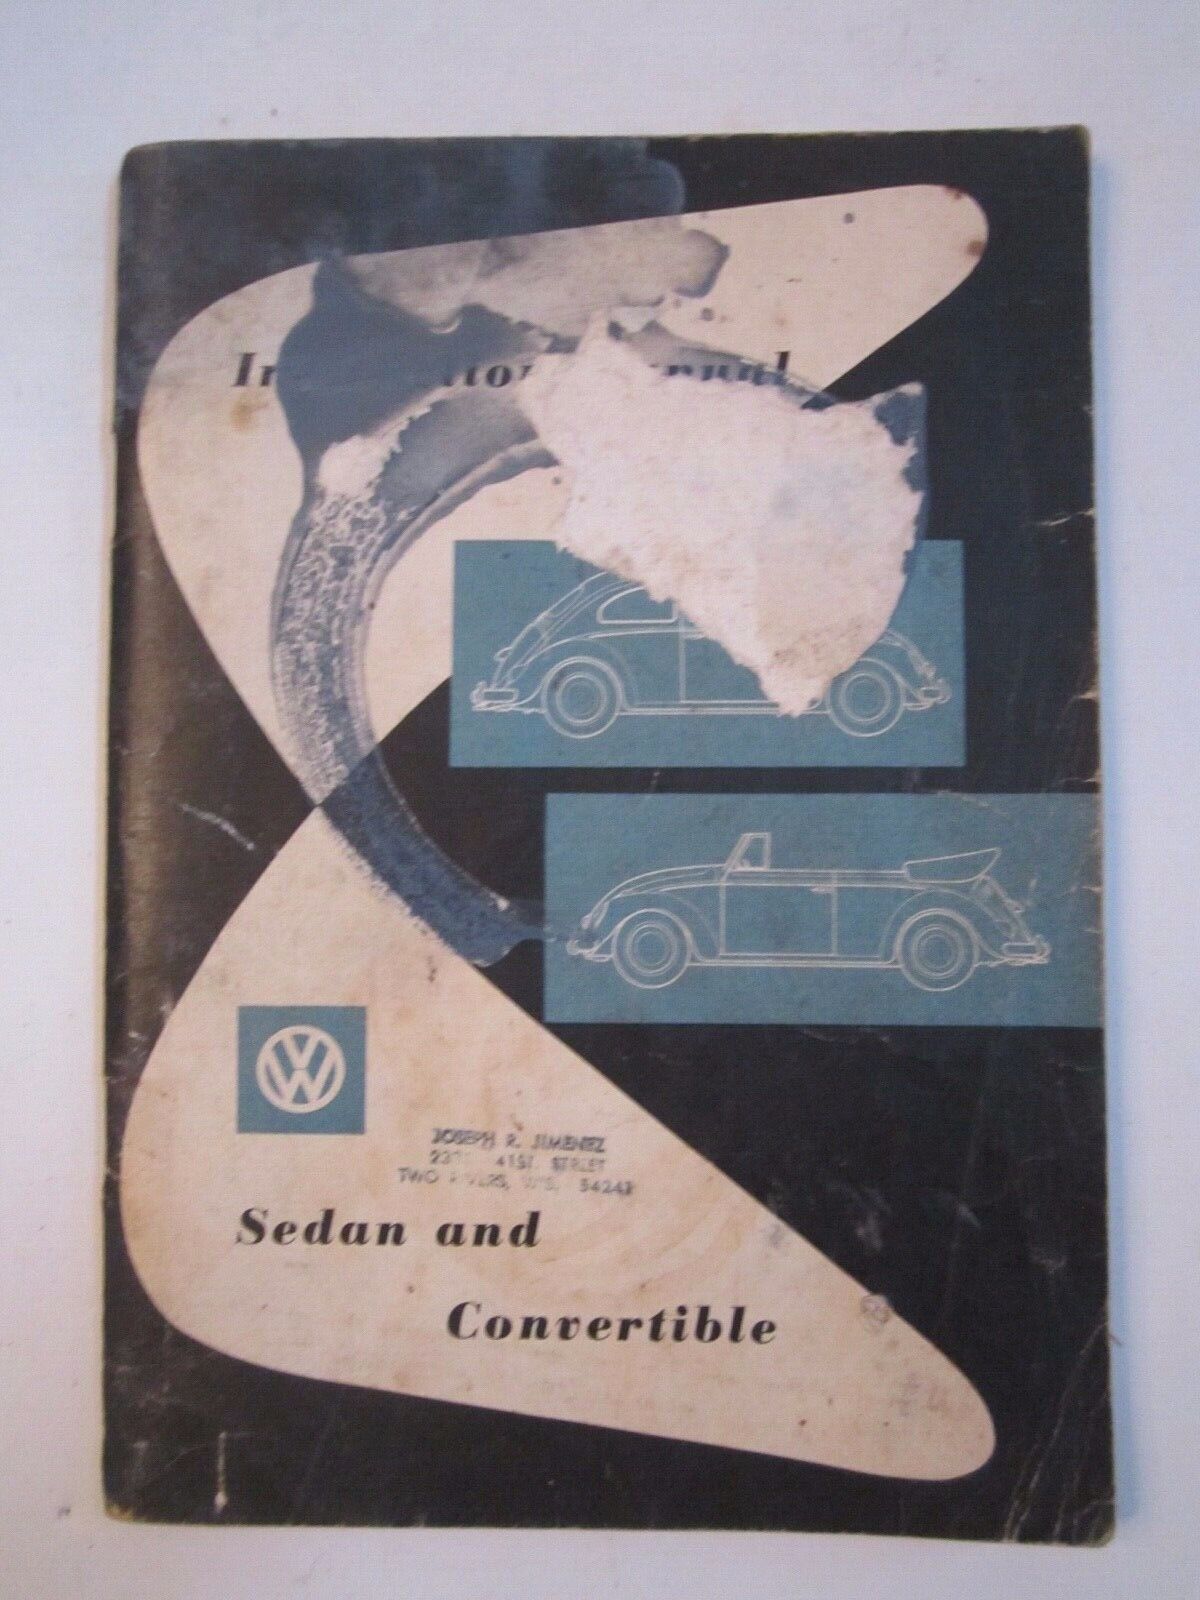 1960 VOLKSWAGEN OWNER'S MANUAL - SEDAN AND CONVERTIBLE